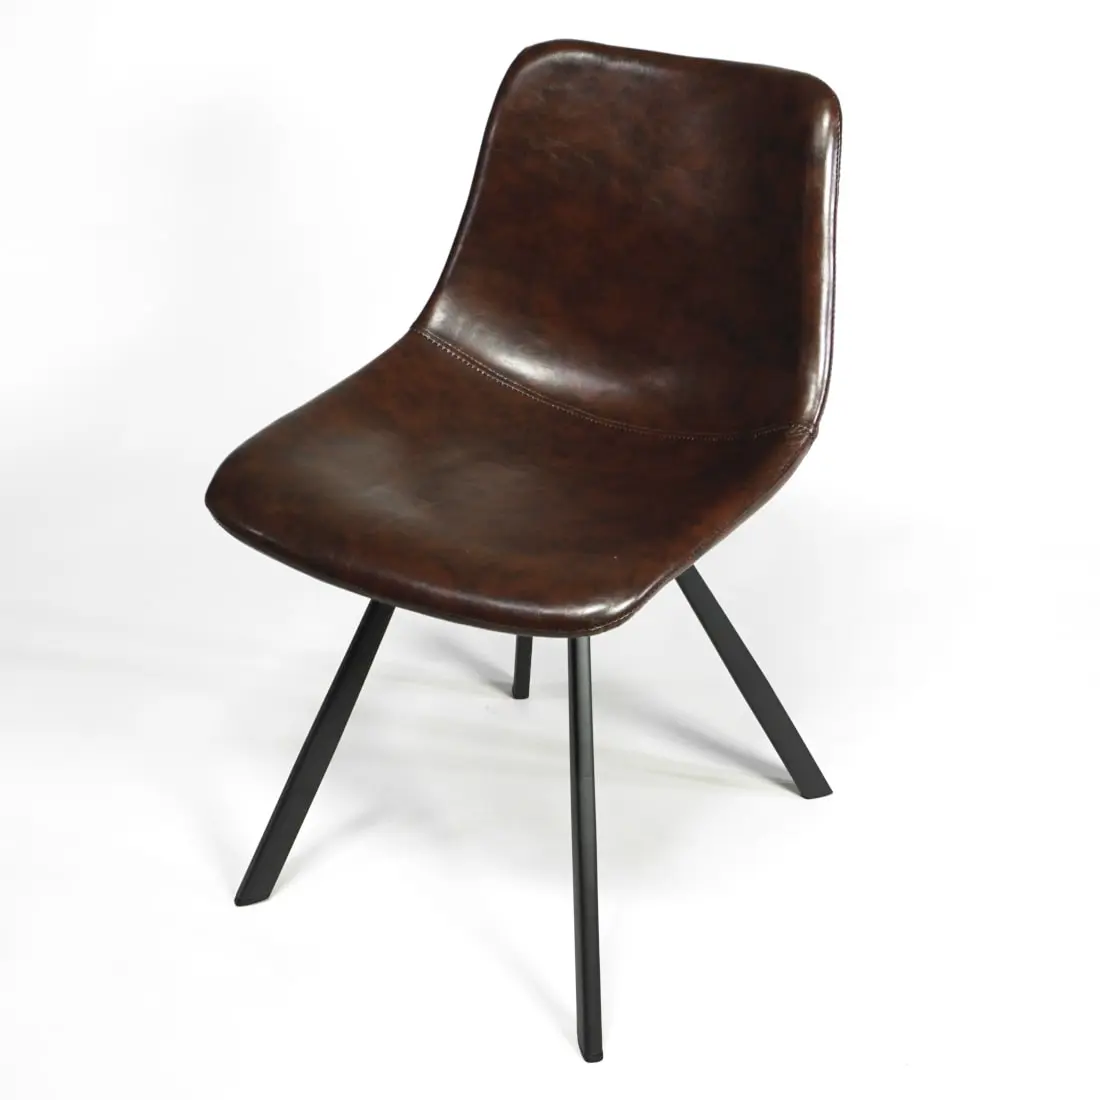 Stuhl vintage industrial Design Polsterstuhl für den Esstisch zuhause